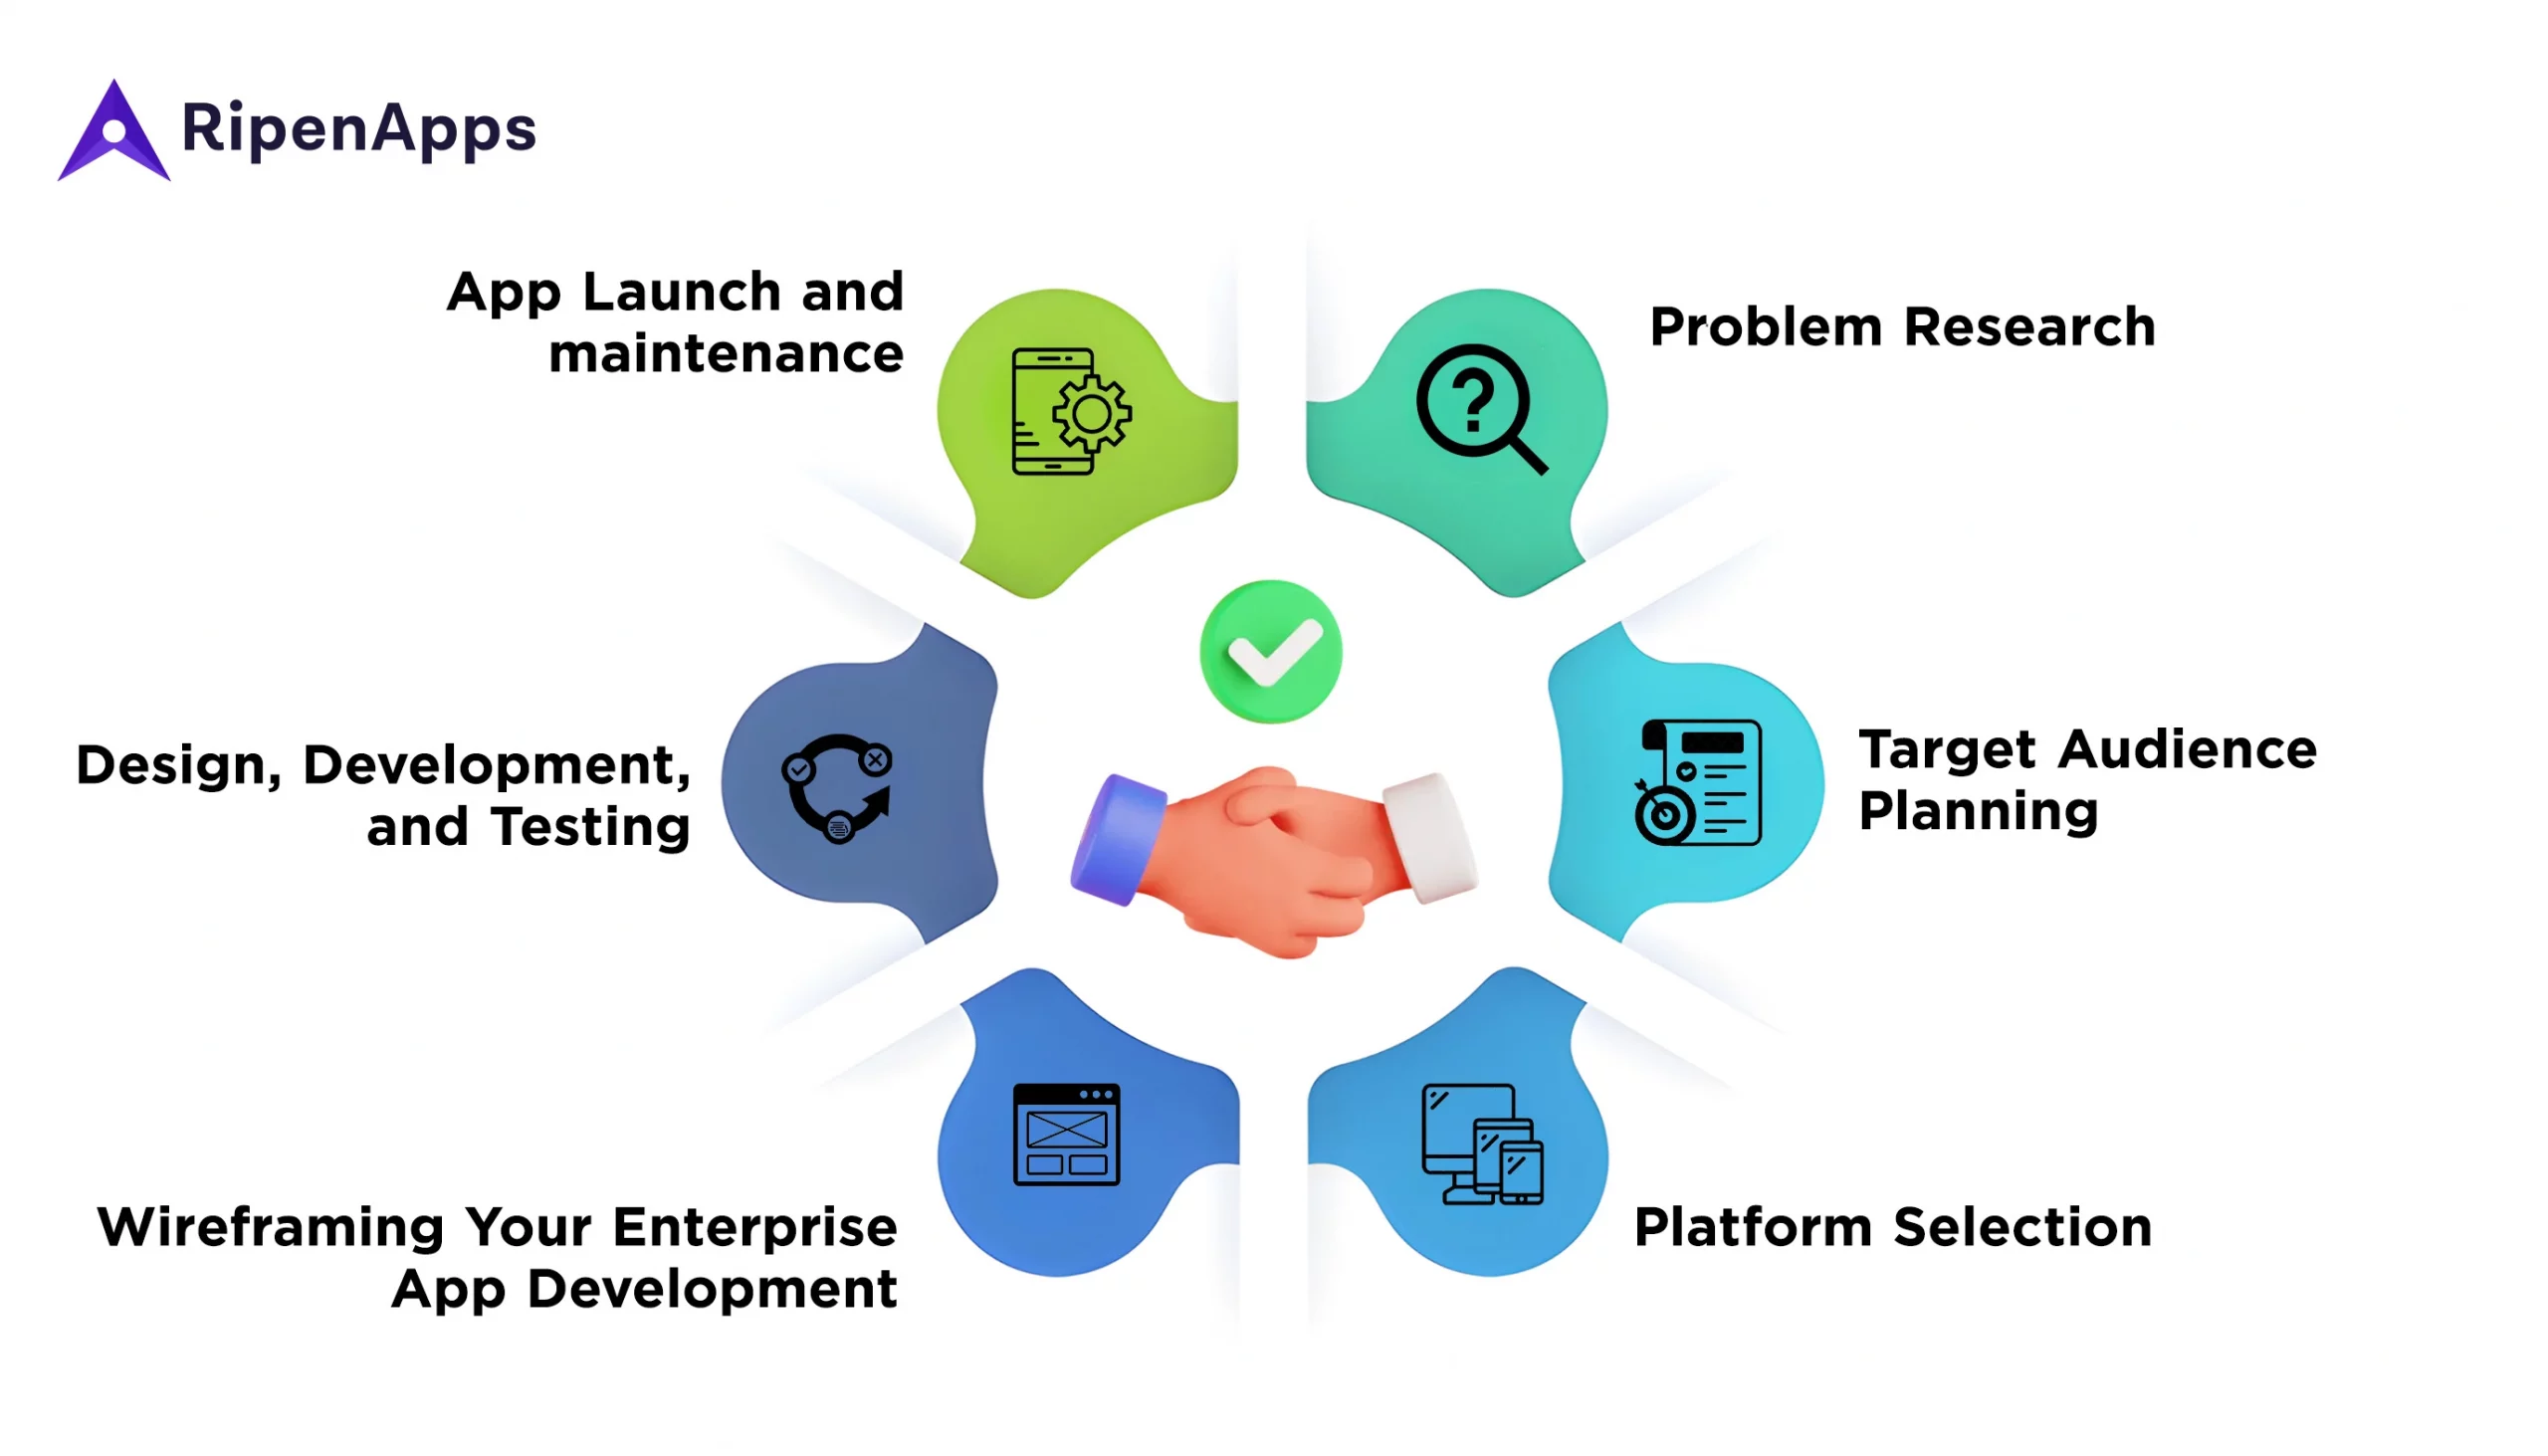 Steps involved in Enterprise App Development